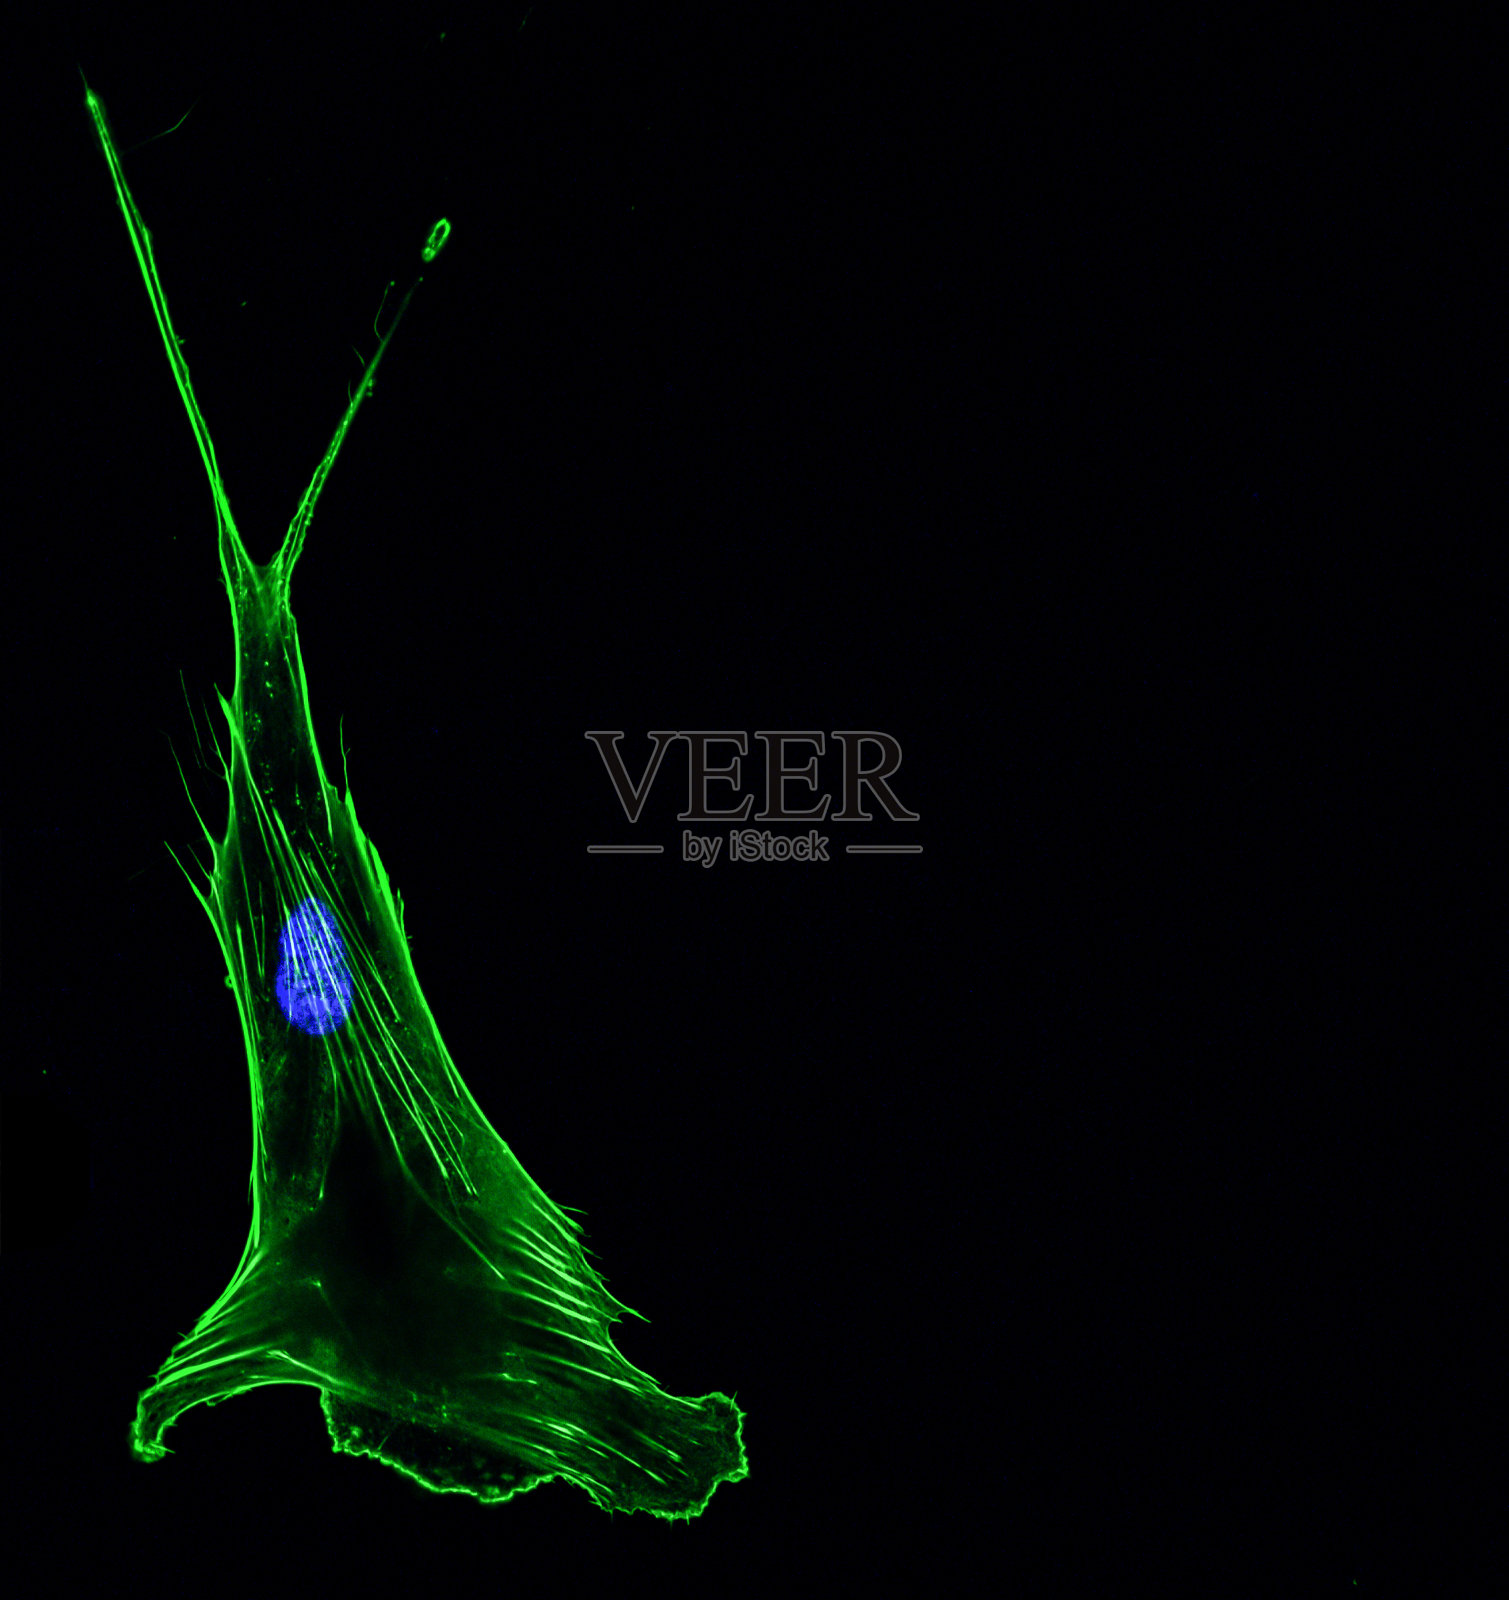 单个侵袭性肺癌细胞的免疫荧光共聚焦成像，细胞骨架为绿色，细胞核为蓝色照片摄影图片